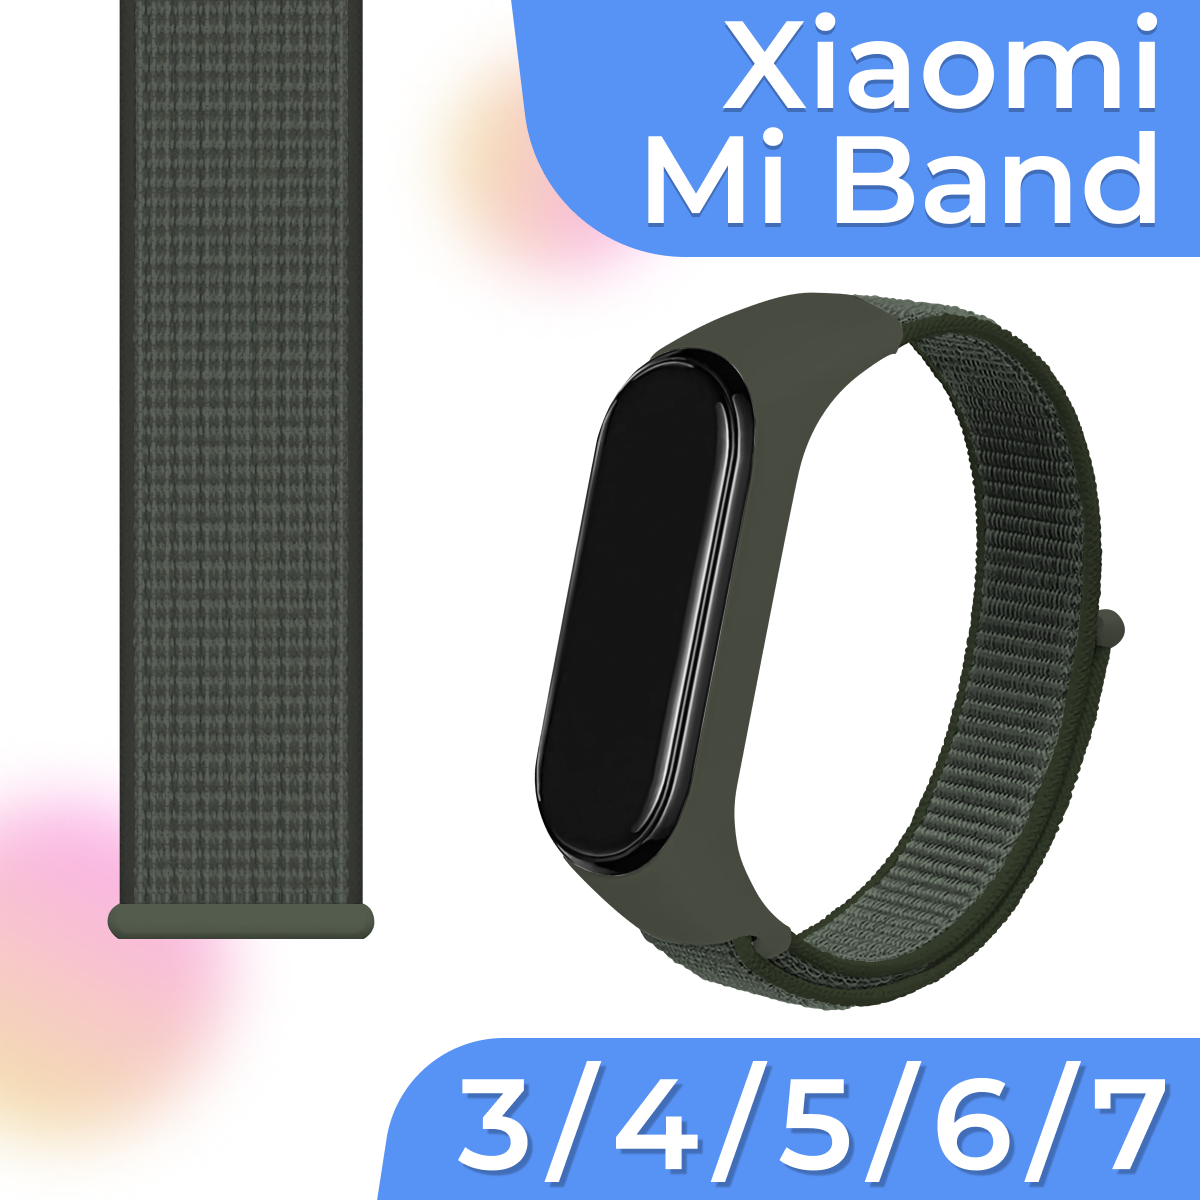 Нейлоновый браслет для умных смарт часов Xiaomi Mi Band 3, 4, 5, 6, 7 / Тканевый ремешок для фитнес трекера Сяоми Ми Бэнд 3, 4, 5, 6, 7 / Хаки